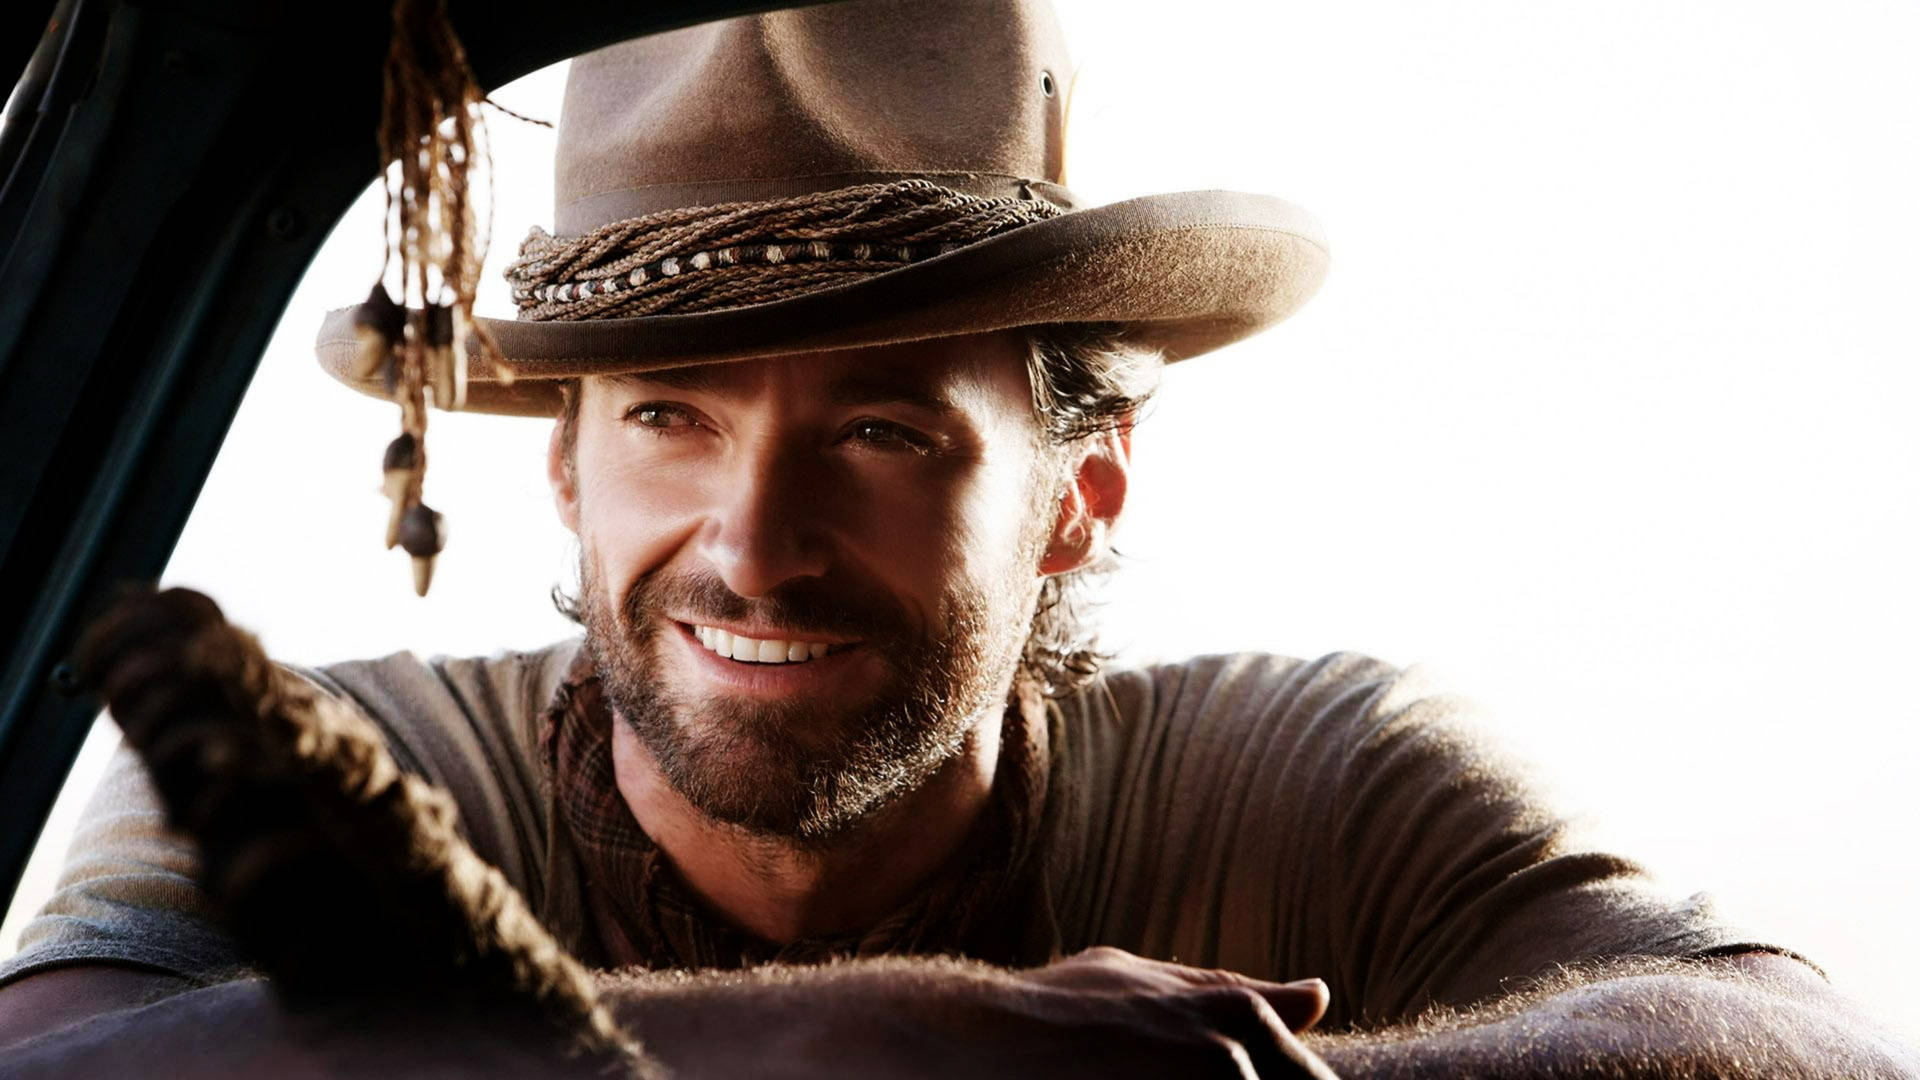 Hugh Jackman In Cowboy Hat